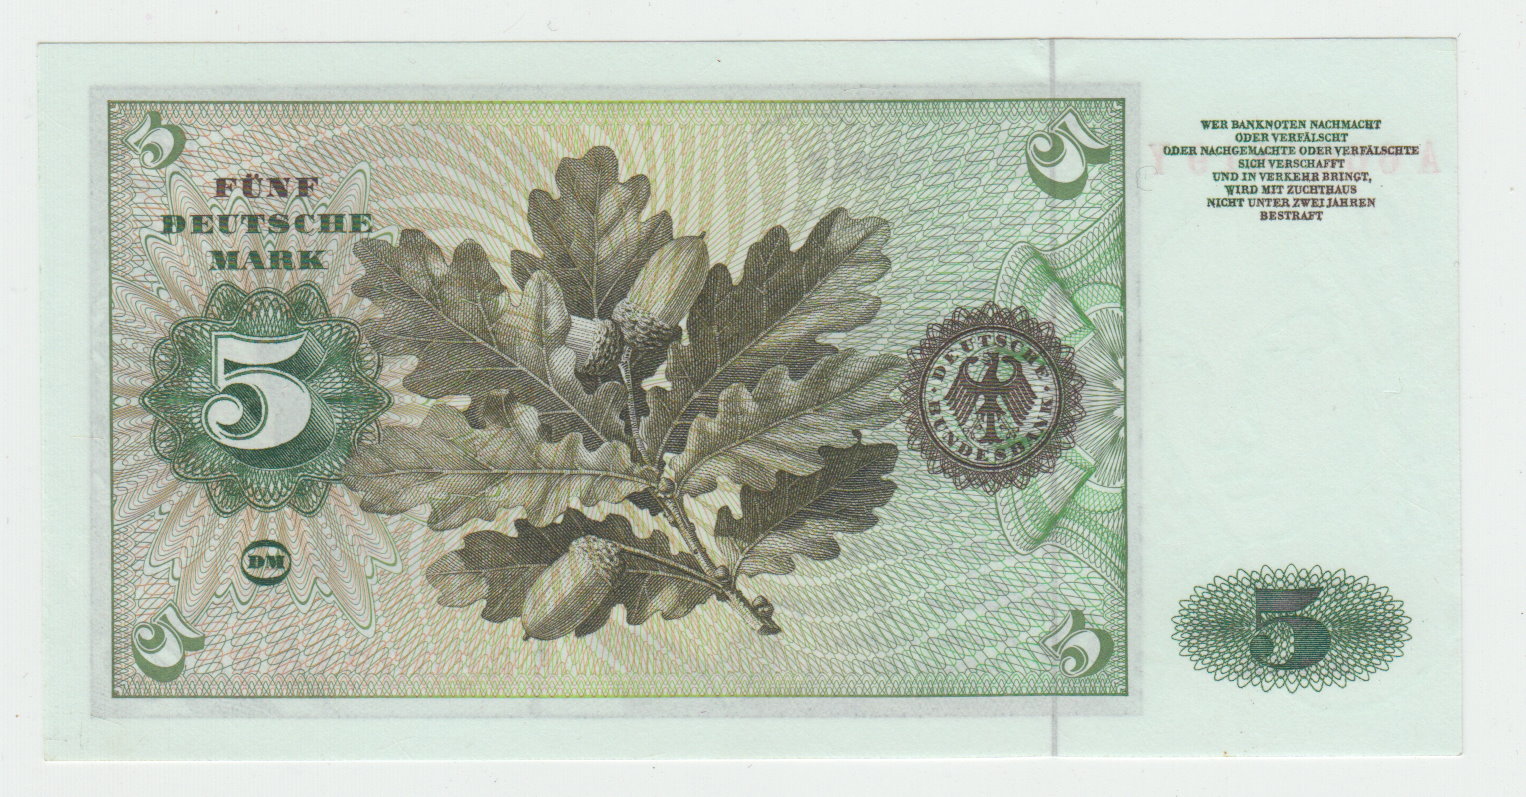  Ro. 262 e, 5 Deutsche Mark vom 02.01.1960, A6600819Y, Kassenfrisch I   